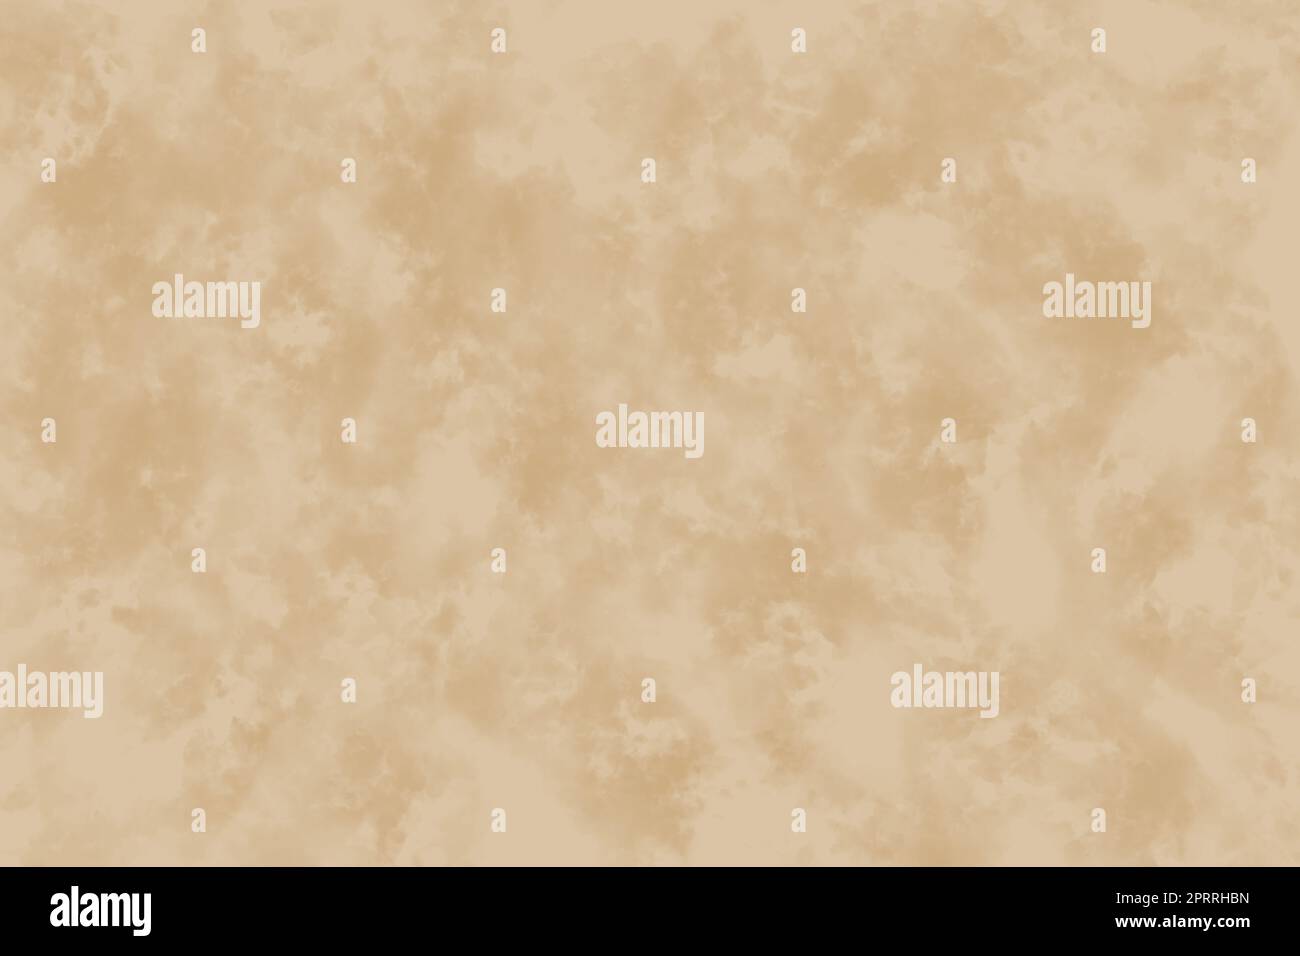 Splendido e delicato sfondo di marmo beige. Illustrazione. Sfondo del sito, banner, cartoline Foto Stock